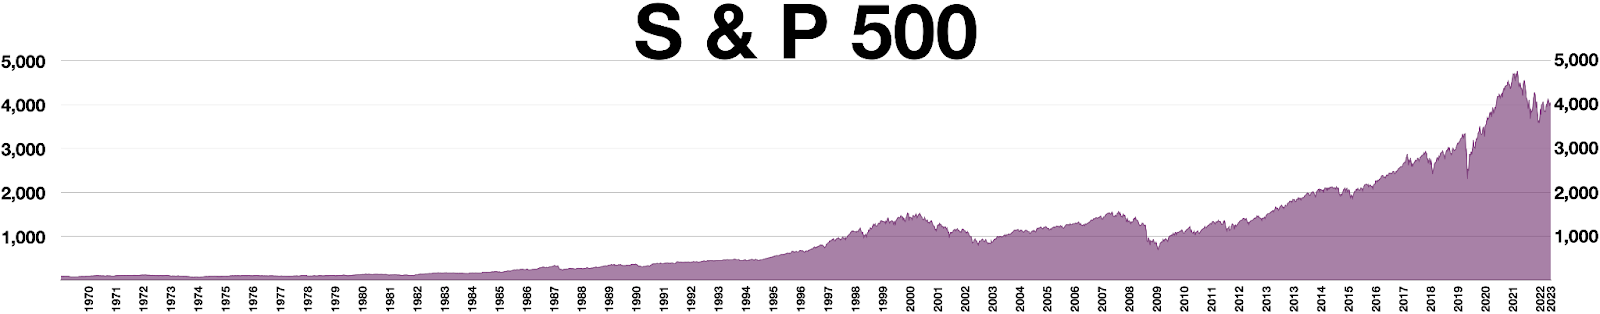 مخطط S&P 500 طويل الأجل